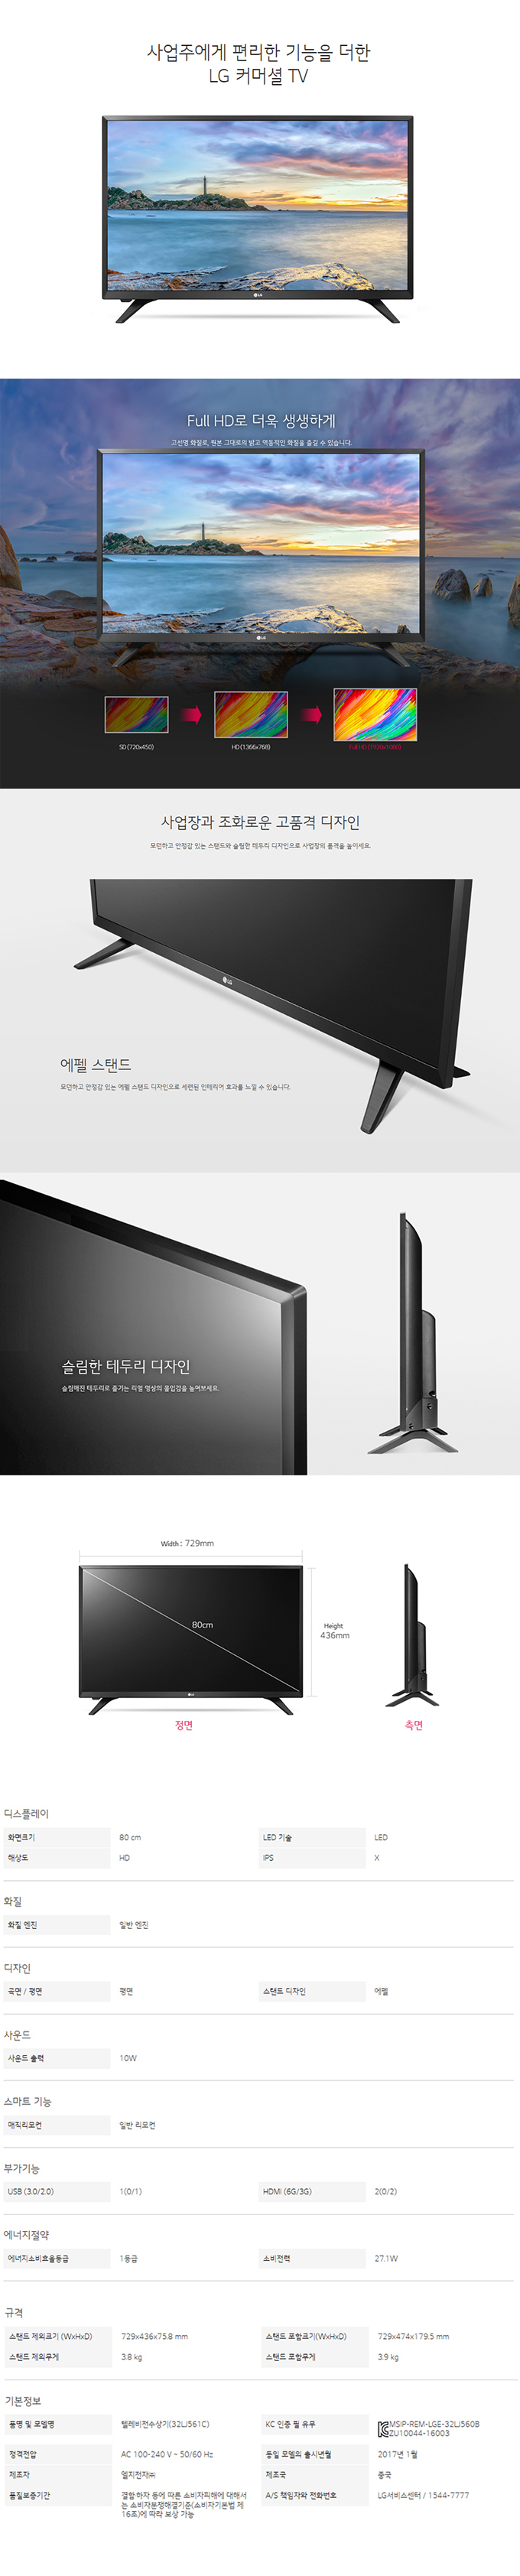 강남케이블 - LG 32인치 LED TV (32LK561C) 상세보기